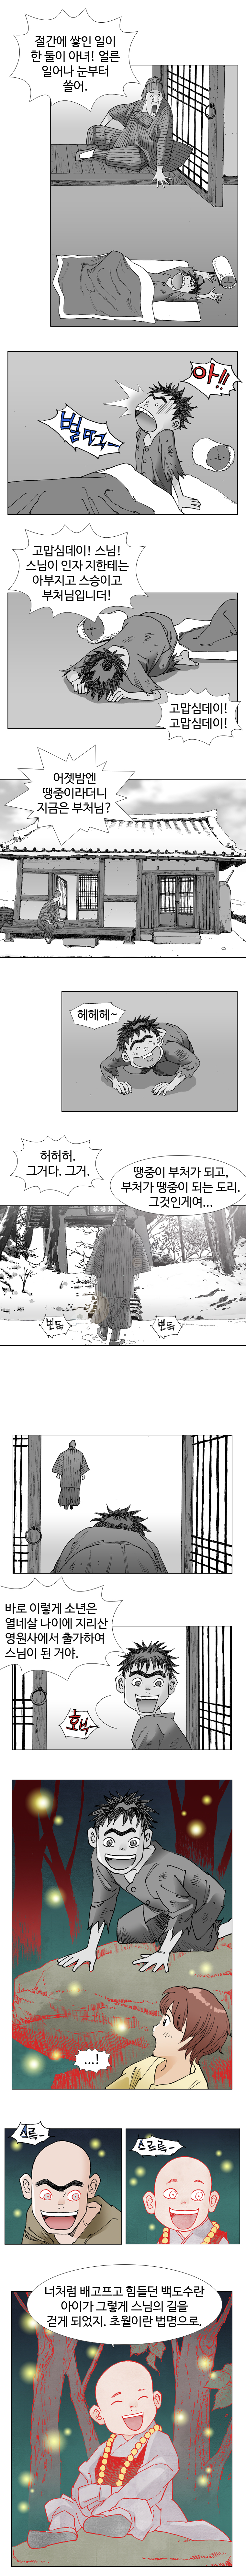 웹툰 백초월 2화-3